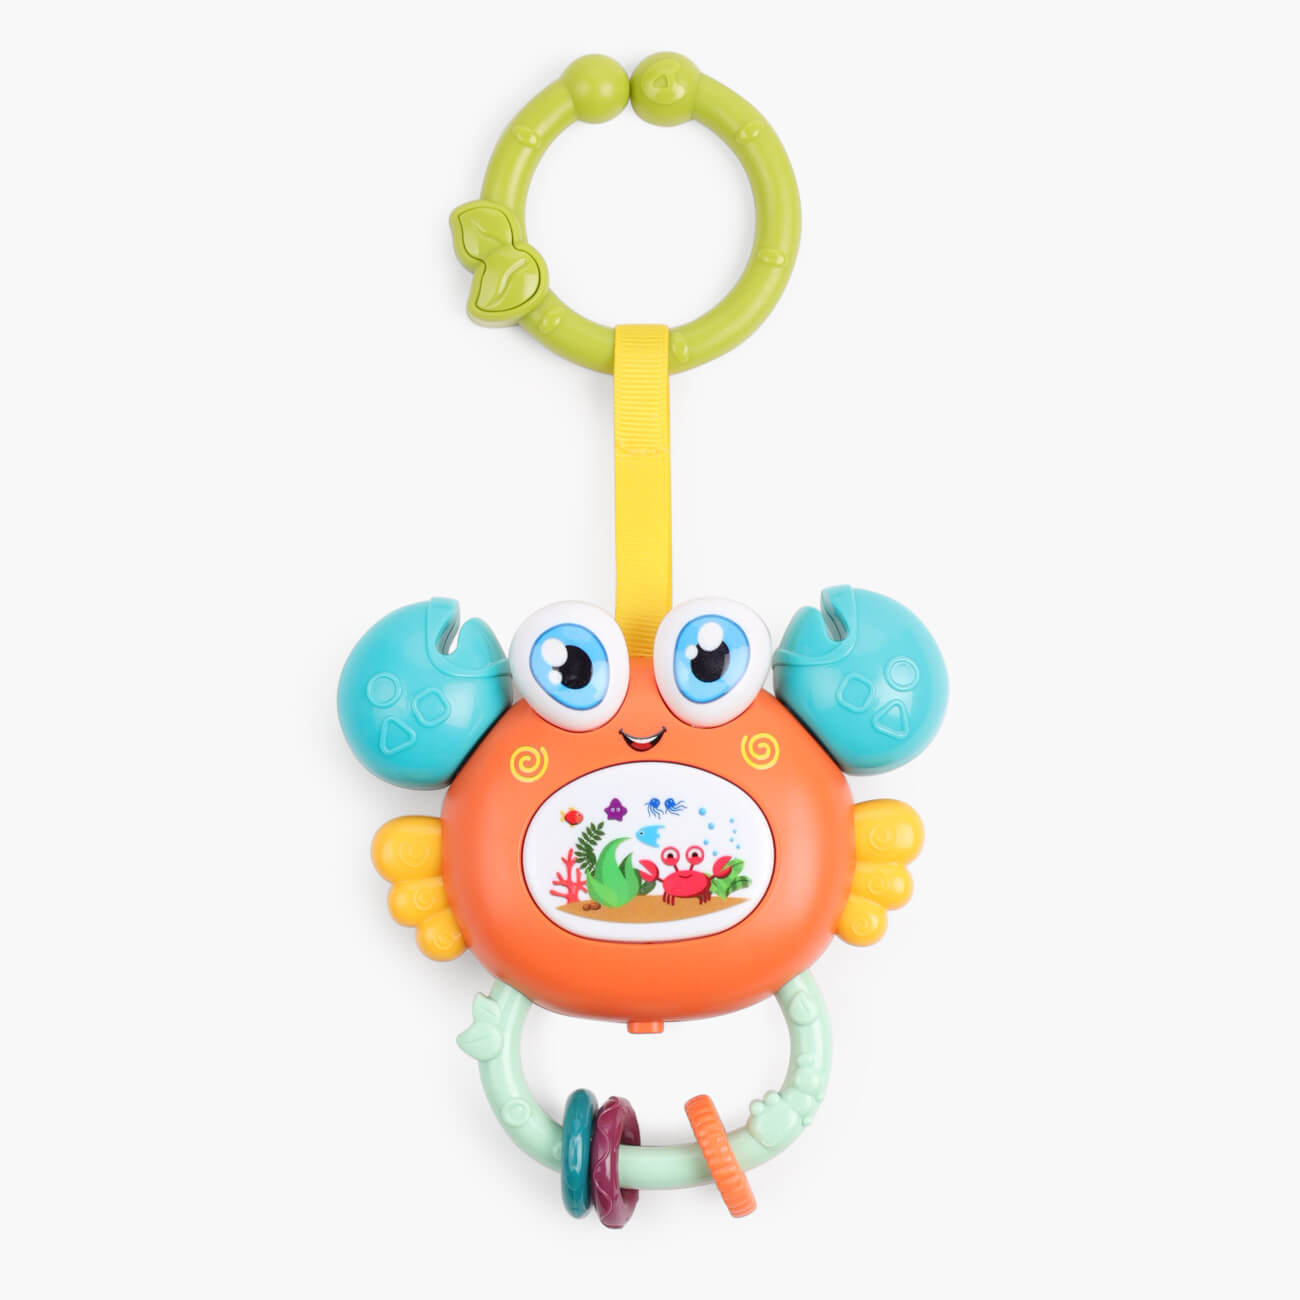 Игрушка развивающая, 11х12 см, музыкальная, пластик, оранжевый, Крабик, Aquatic animals мягкая музыкальная игрушка лунтик 17 см